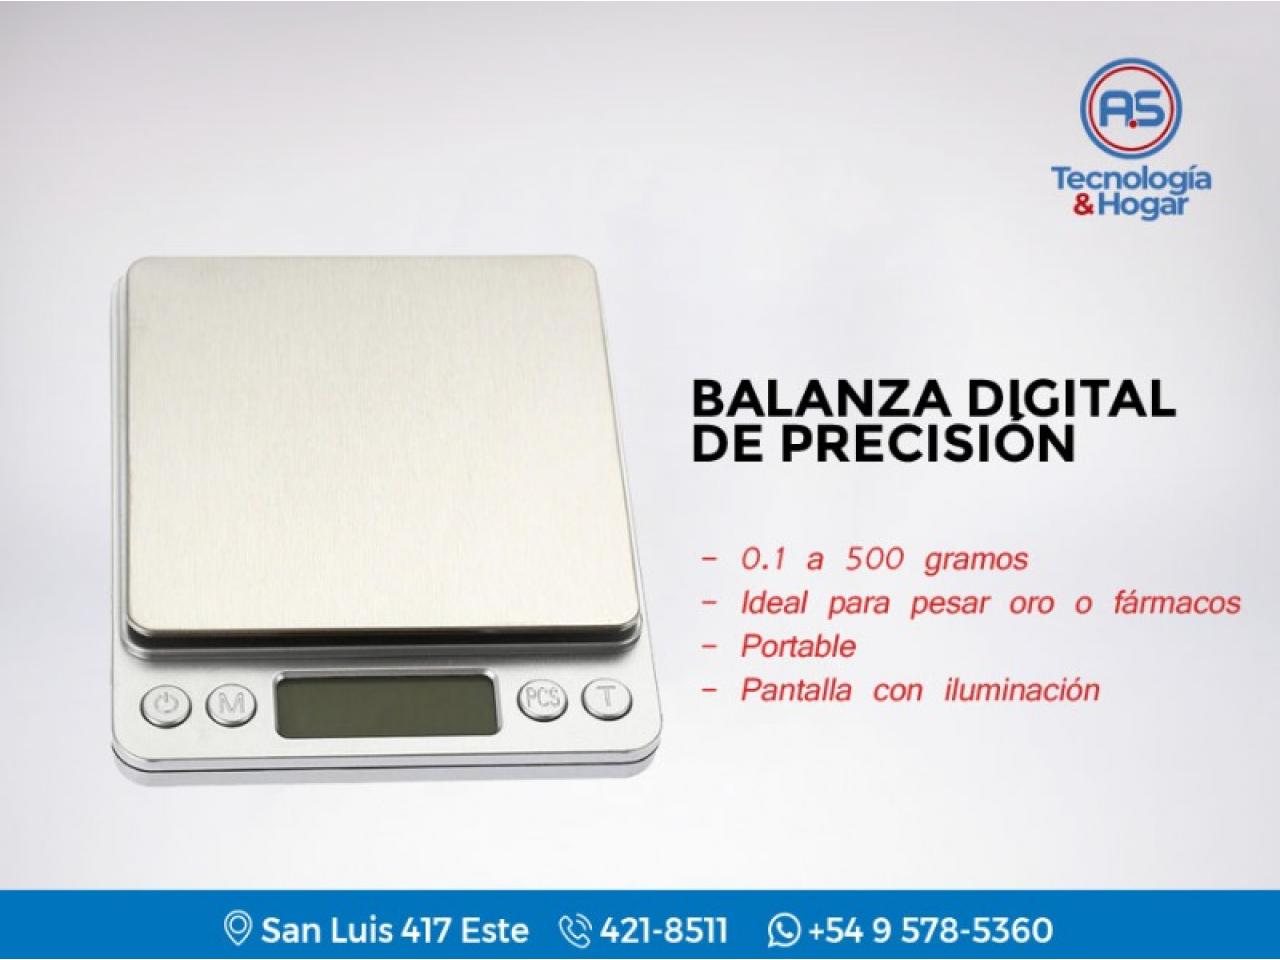 Balanza Digital De Precisión - 0.1 500 Gramos - Ideal Pesar Oro Fármacos - Portable - Nuevas - Comprá en San Juan